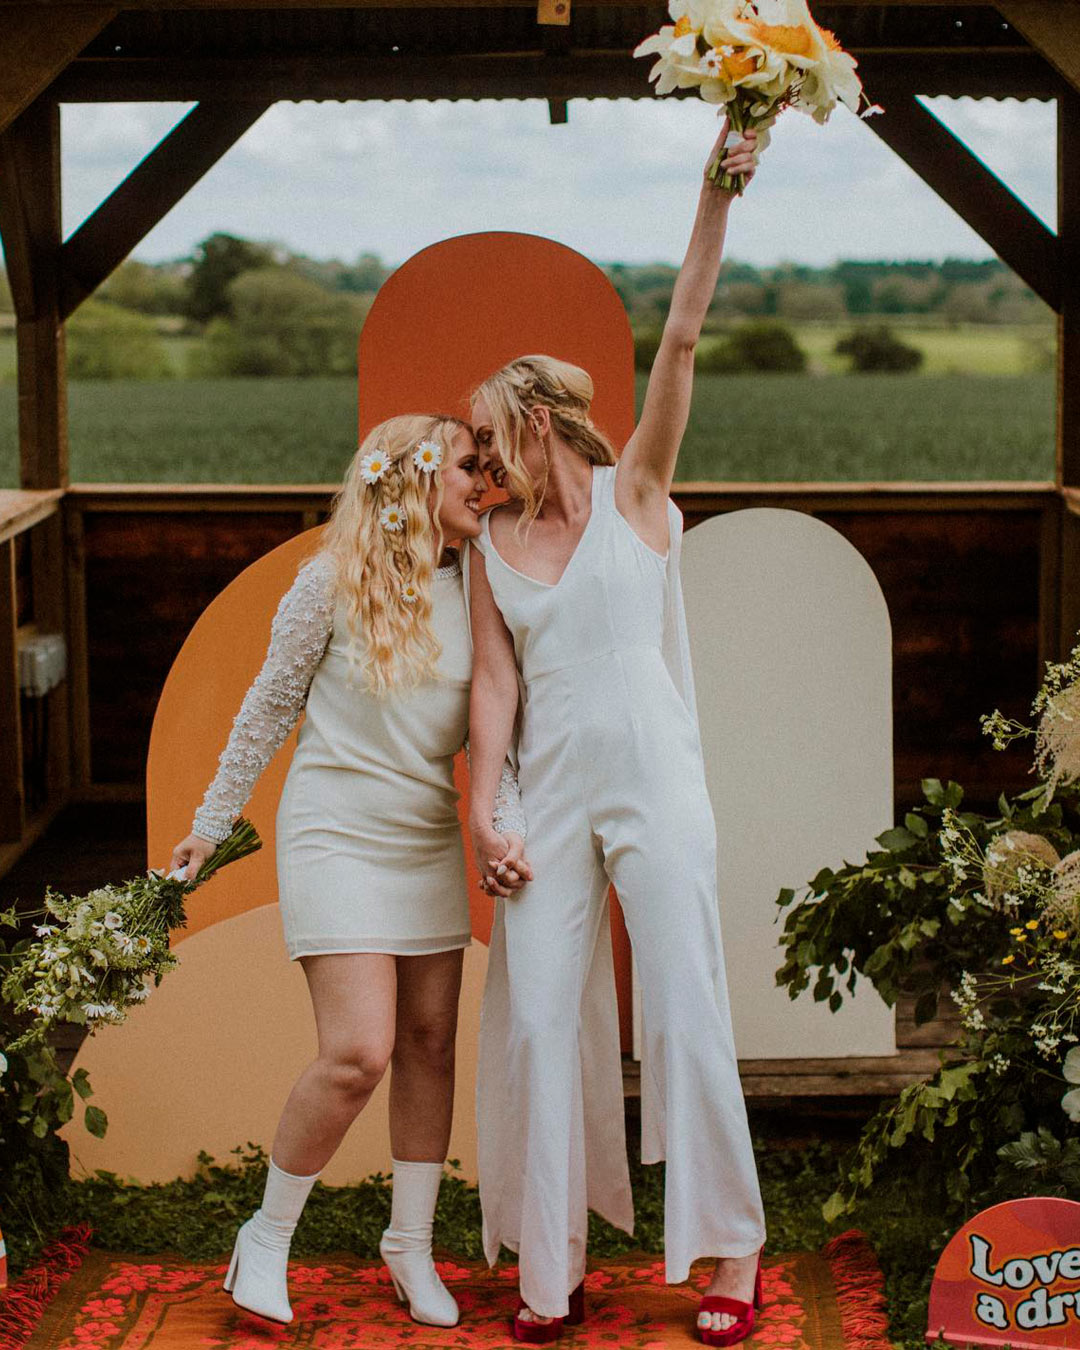 lesbian wedding ideas brides attire